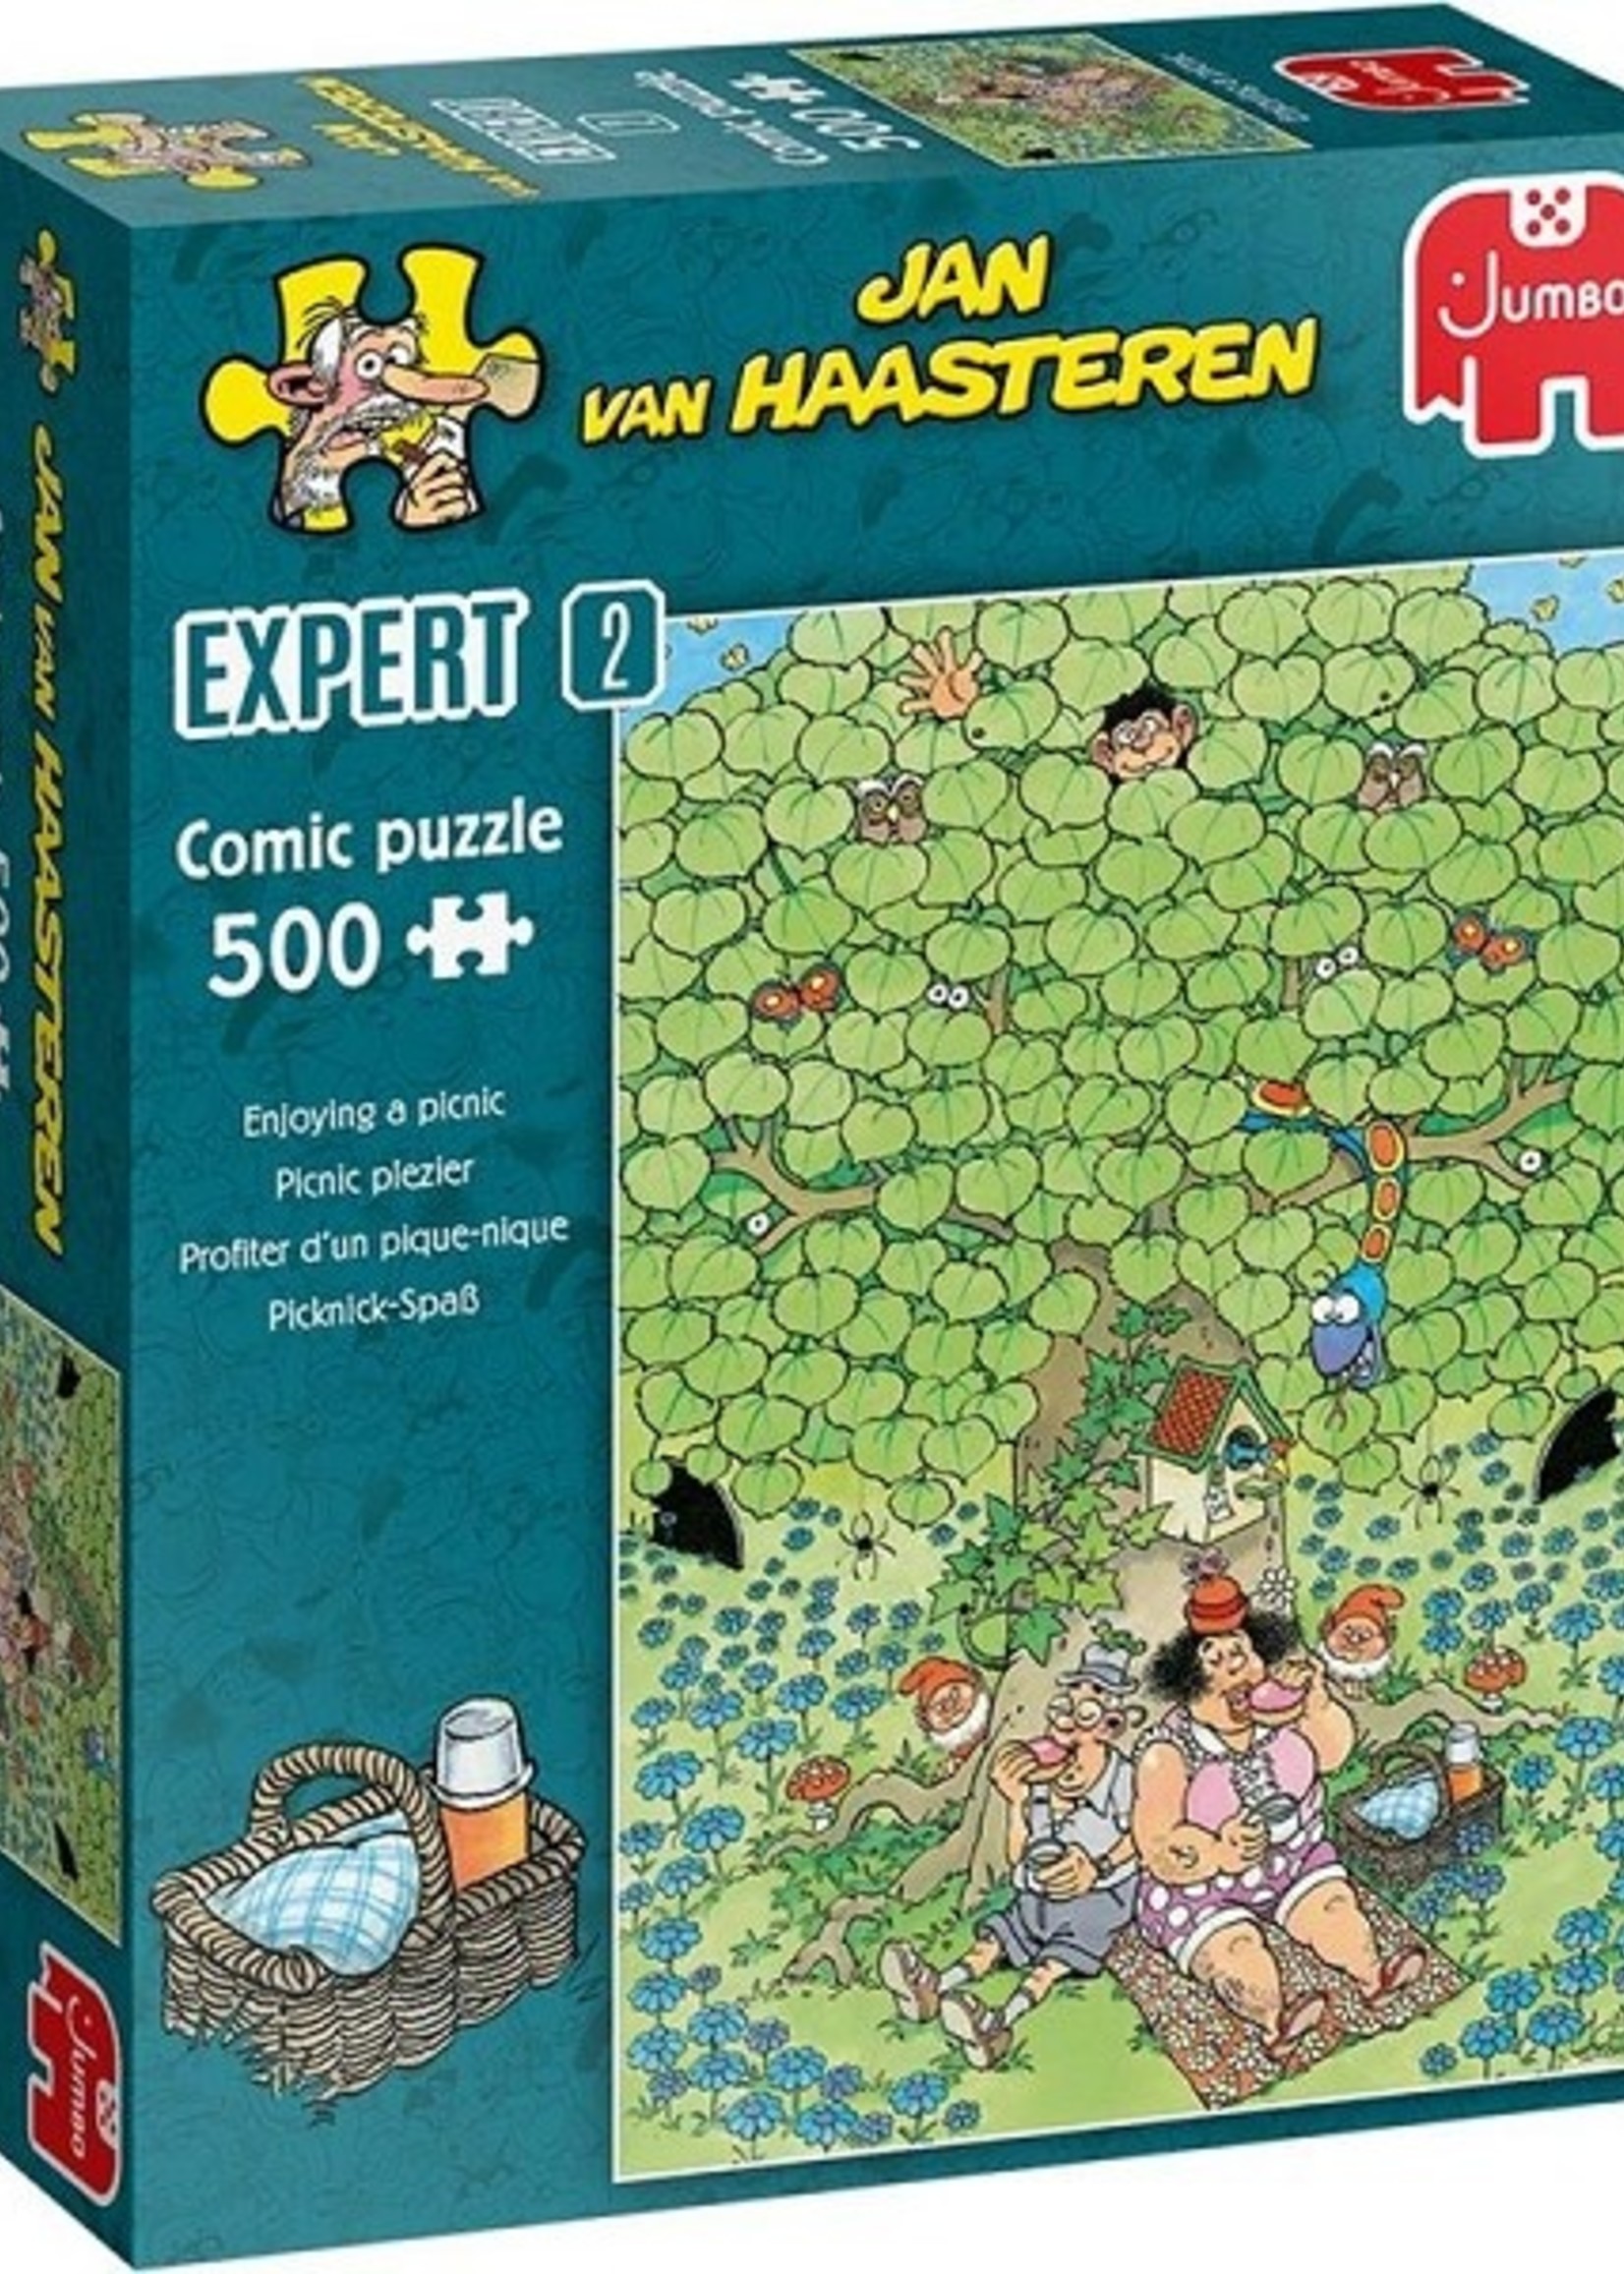 Jumbo Jan van Haasteren puzzel Expert 2 Enjoying a picnic 500 stukjes